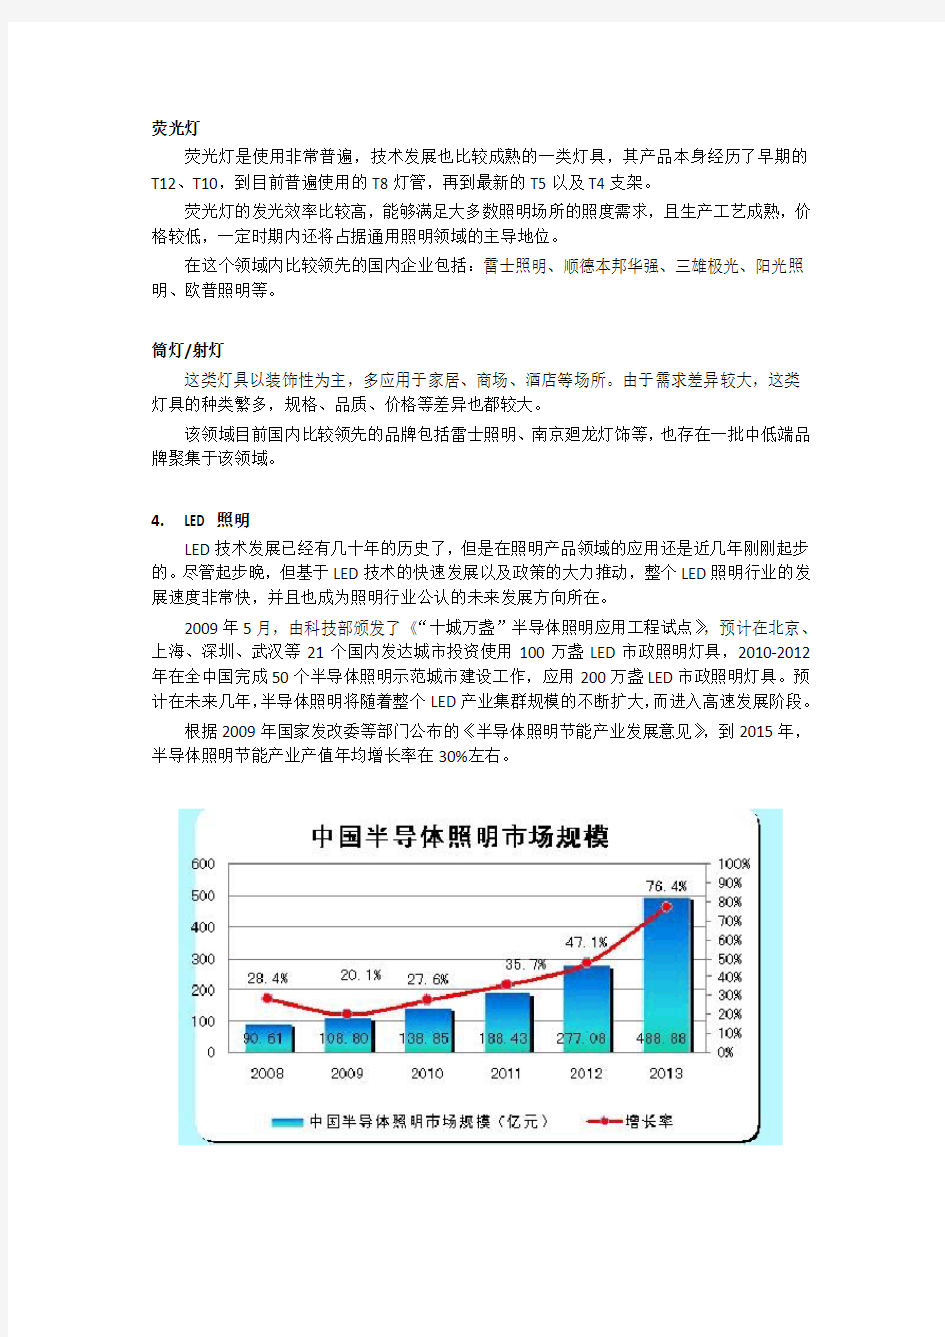 中国照明行业现状分析